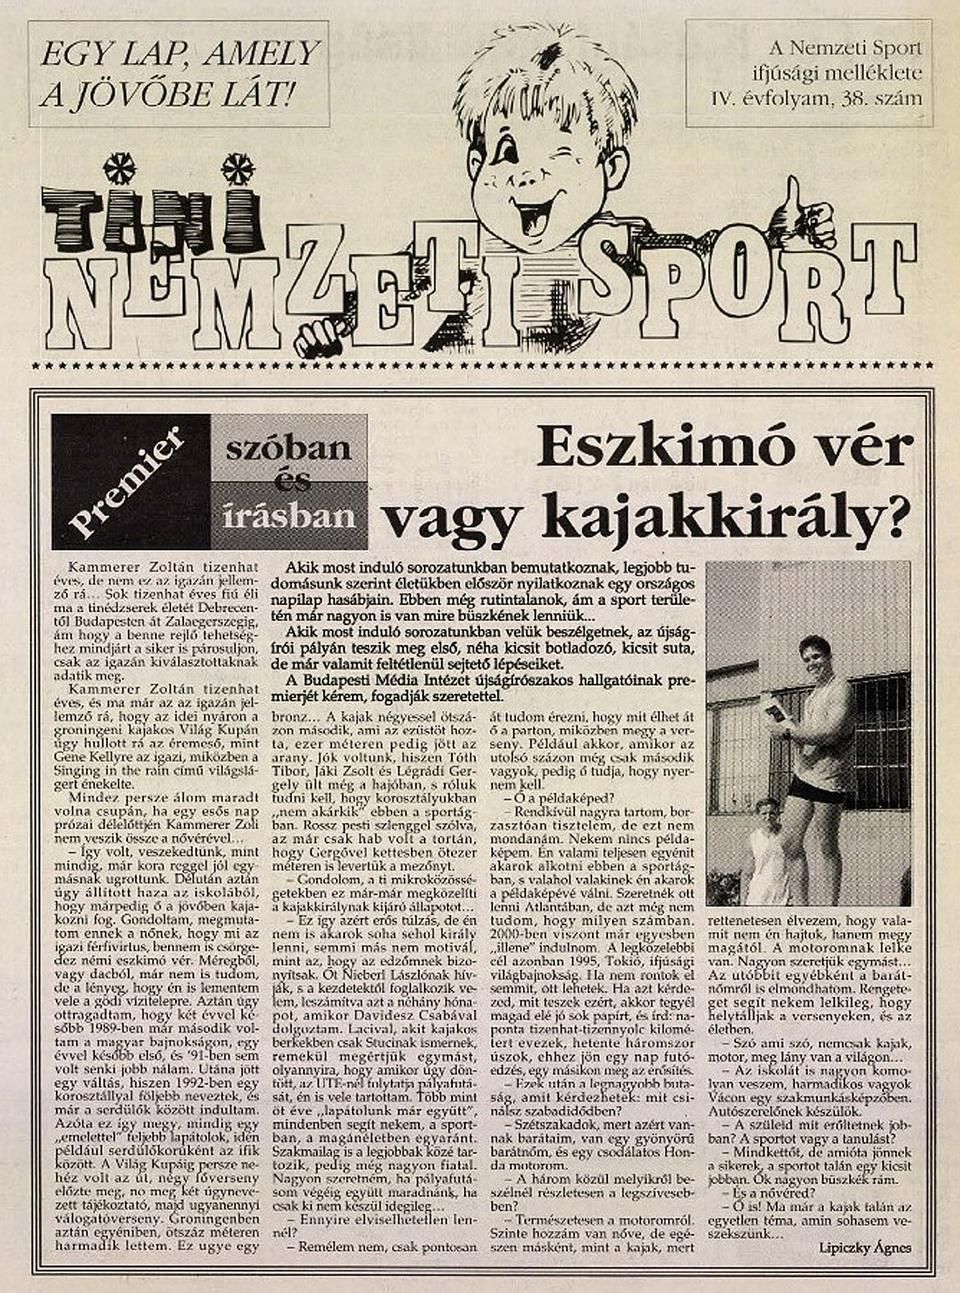 1994. október 14-én jelent meg Kammerer Zoltánról az első cikk a Nemzeti Sportban – ahogy a szerző, Lipiczky Ágnes is első cikkét jegyezte a sportnapilapban